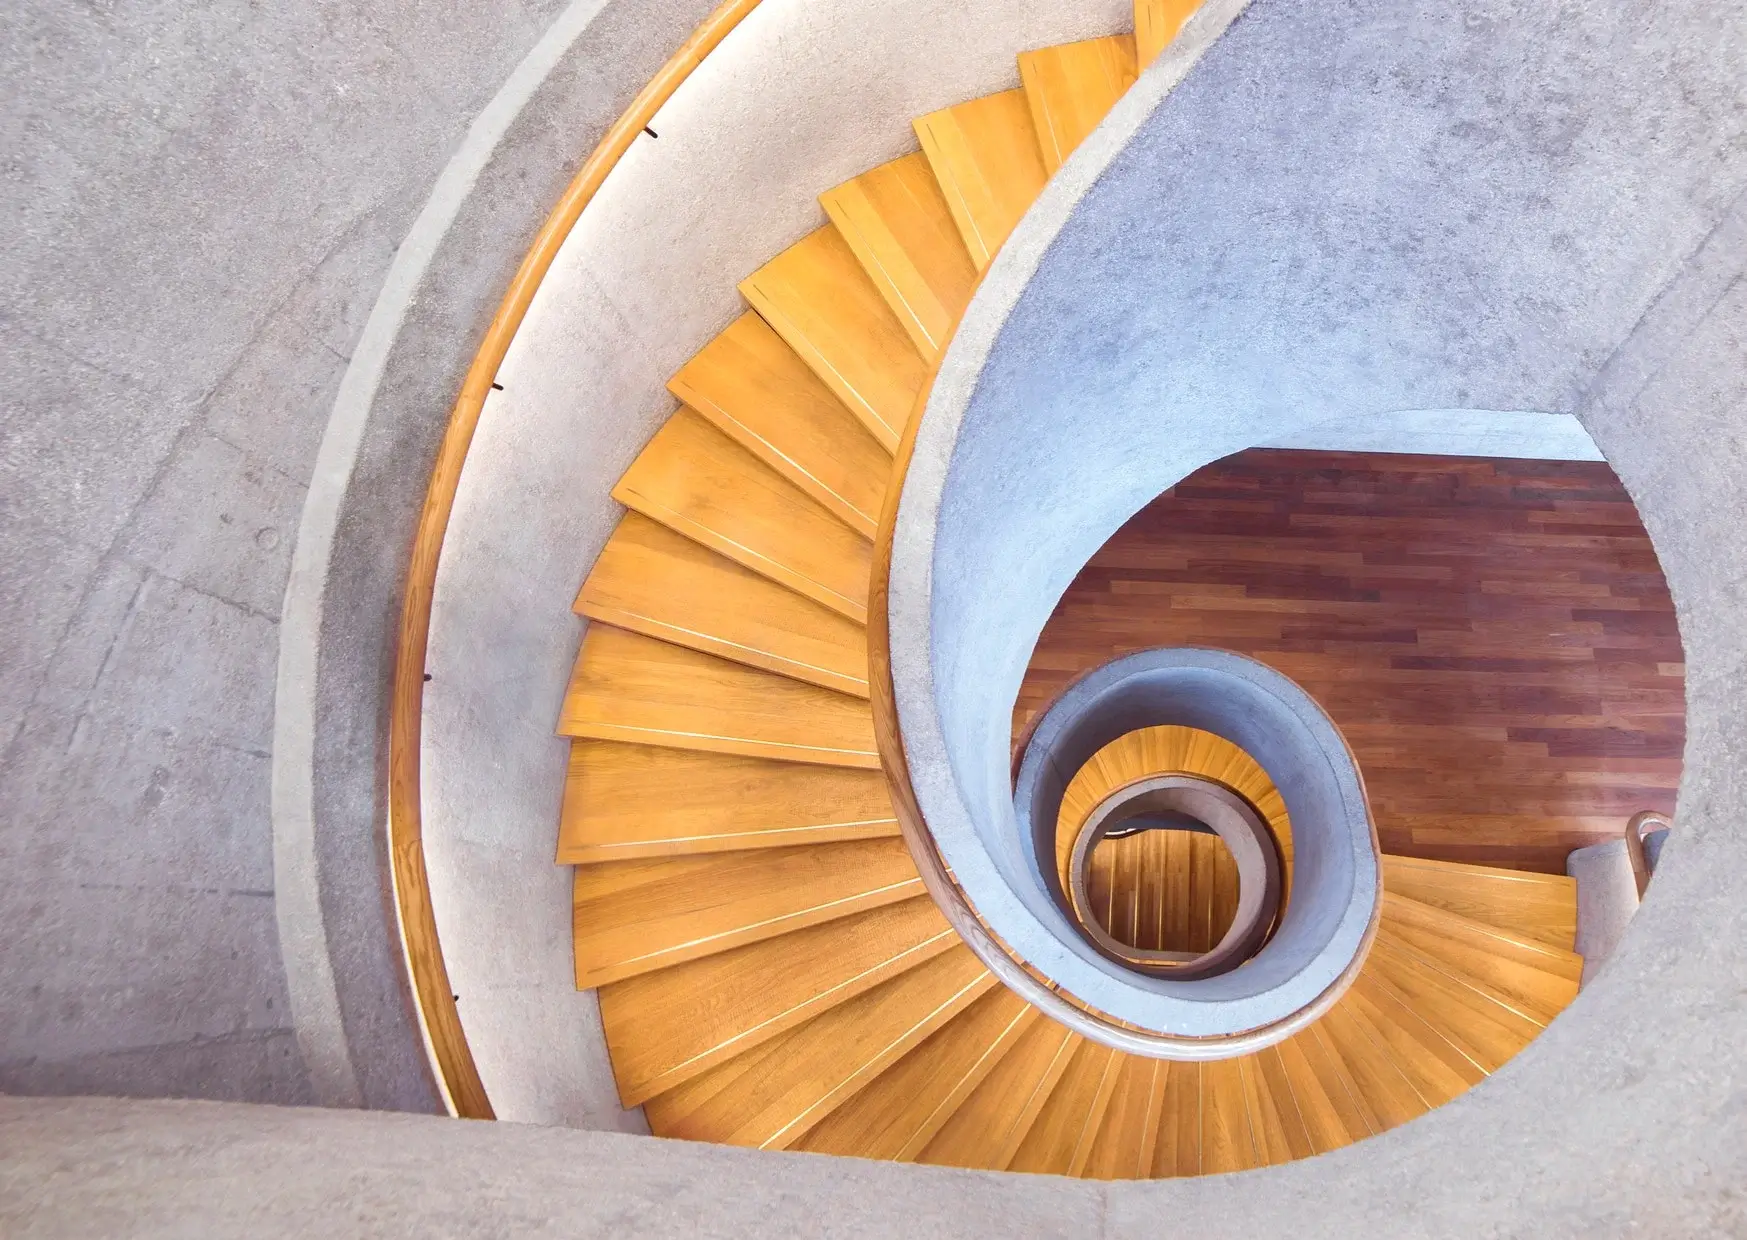 Spiral-staircase Design